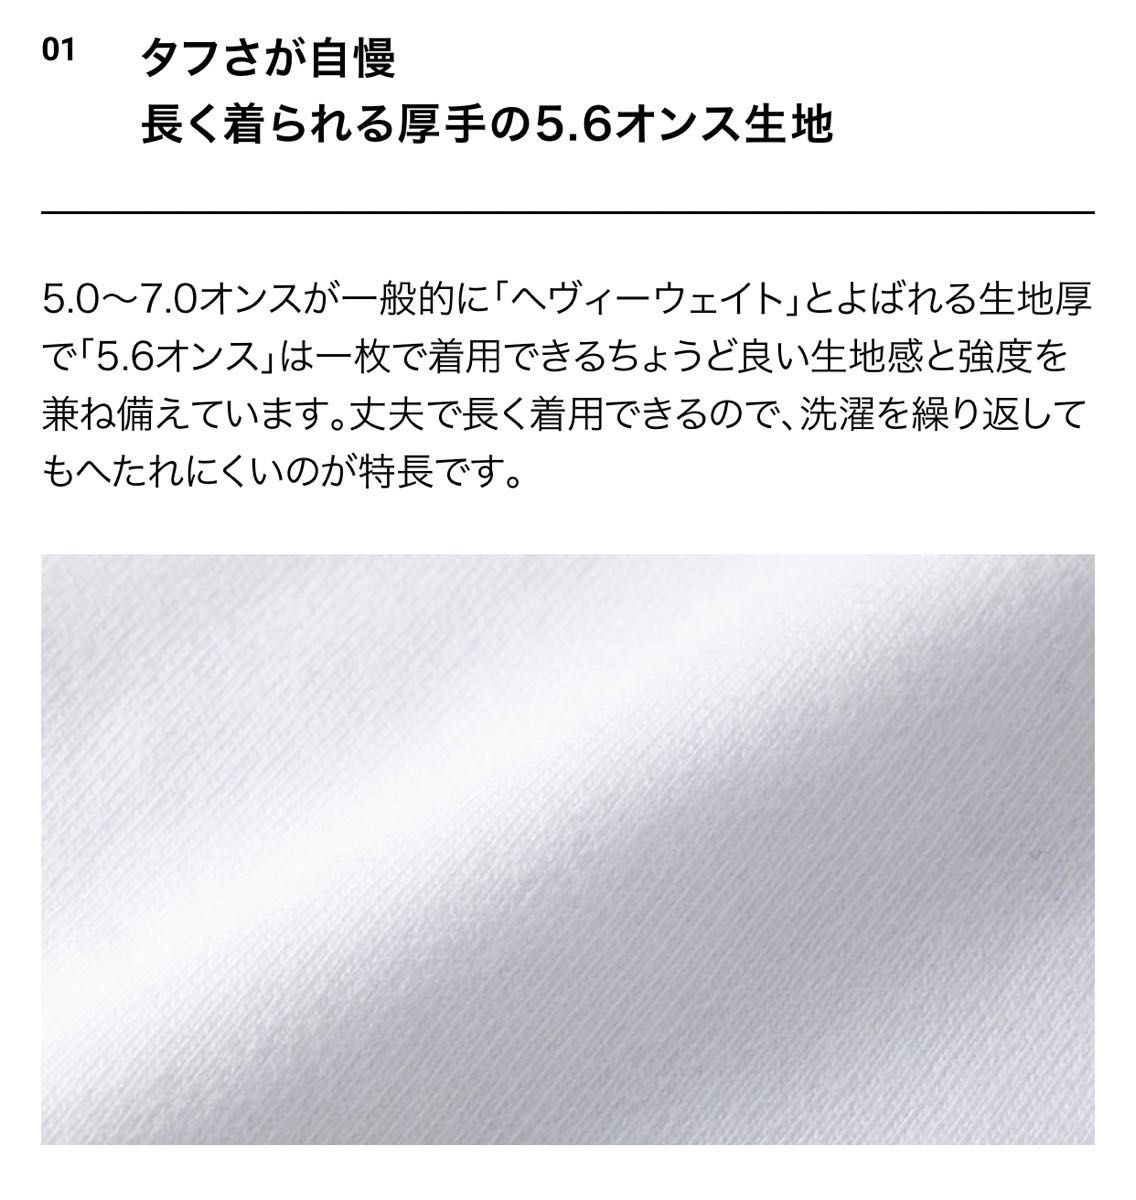 Tシャツ 半袖 5.6オンス ハイクオリティー【5001-01】XL ブラック 綿100%